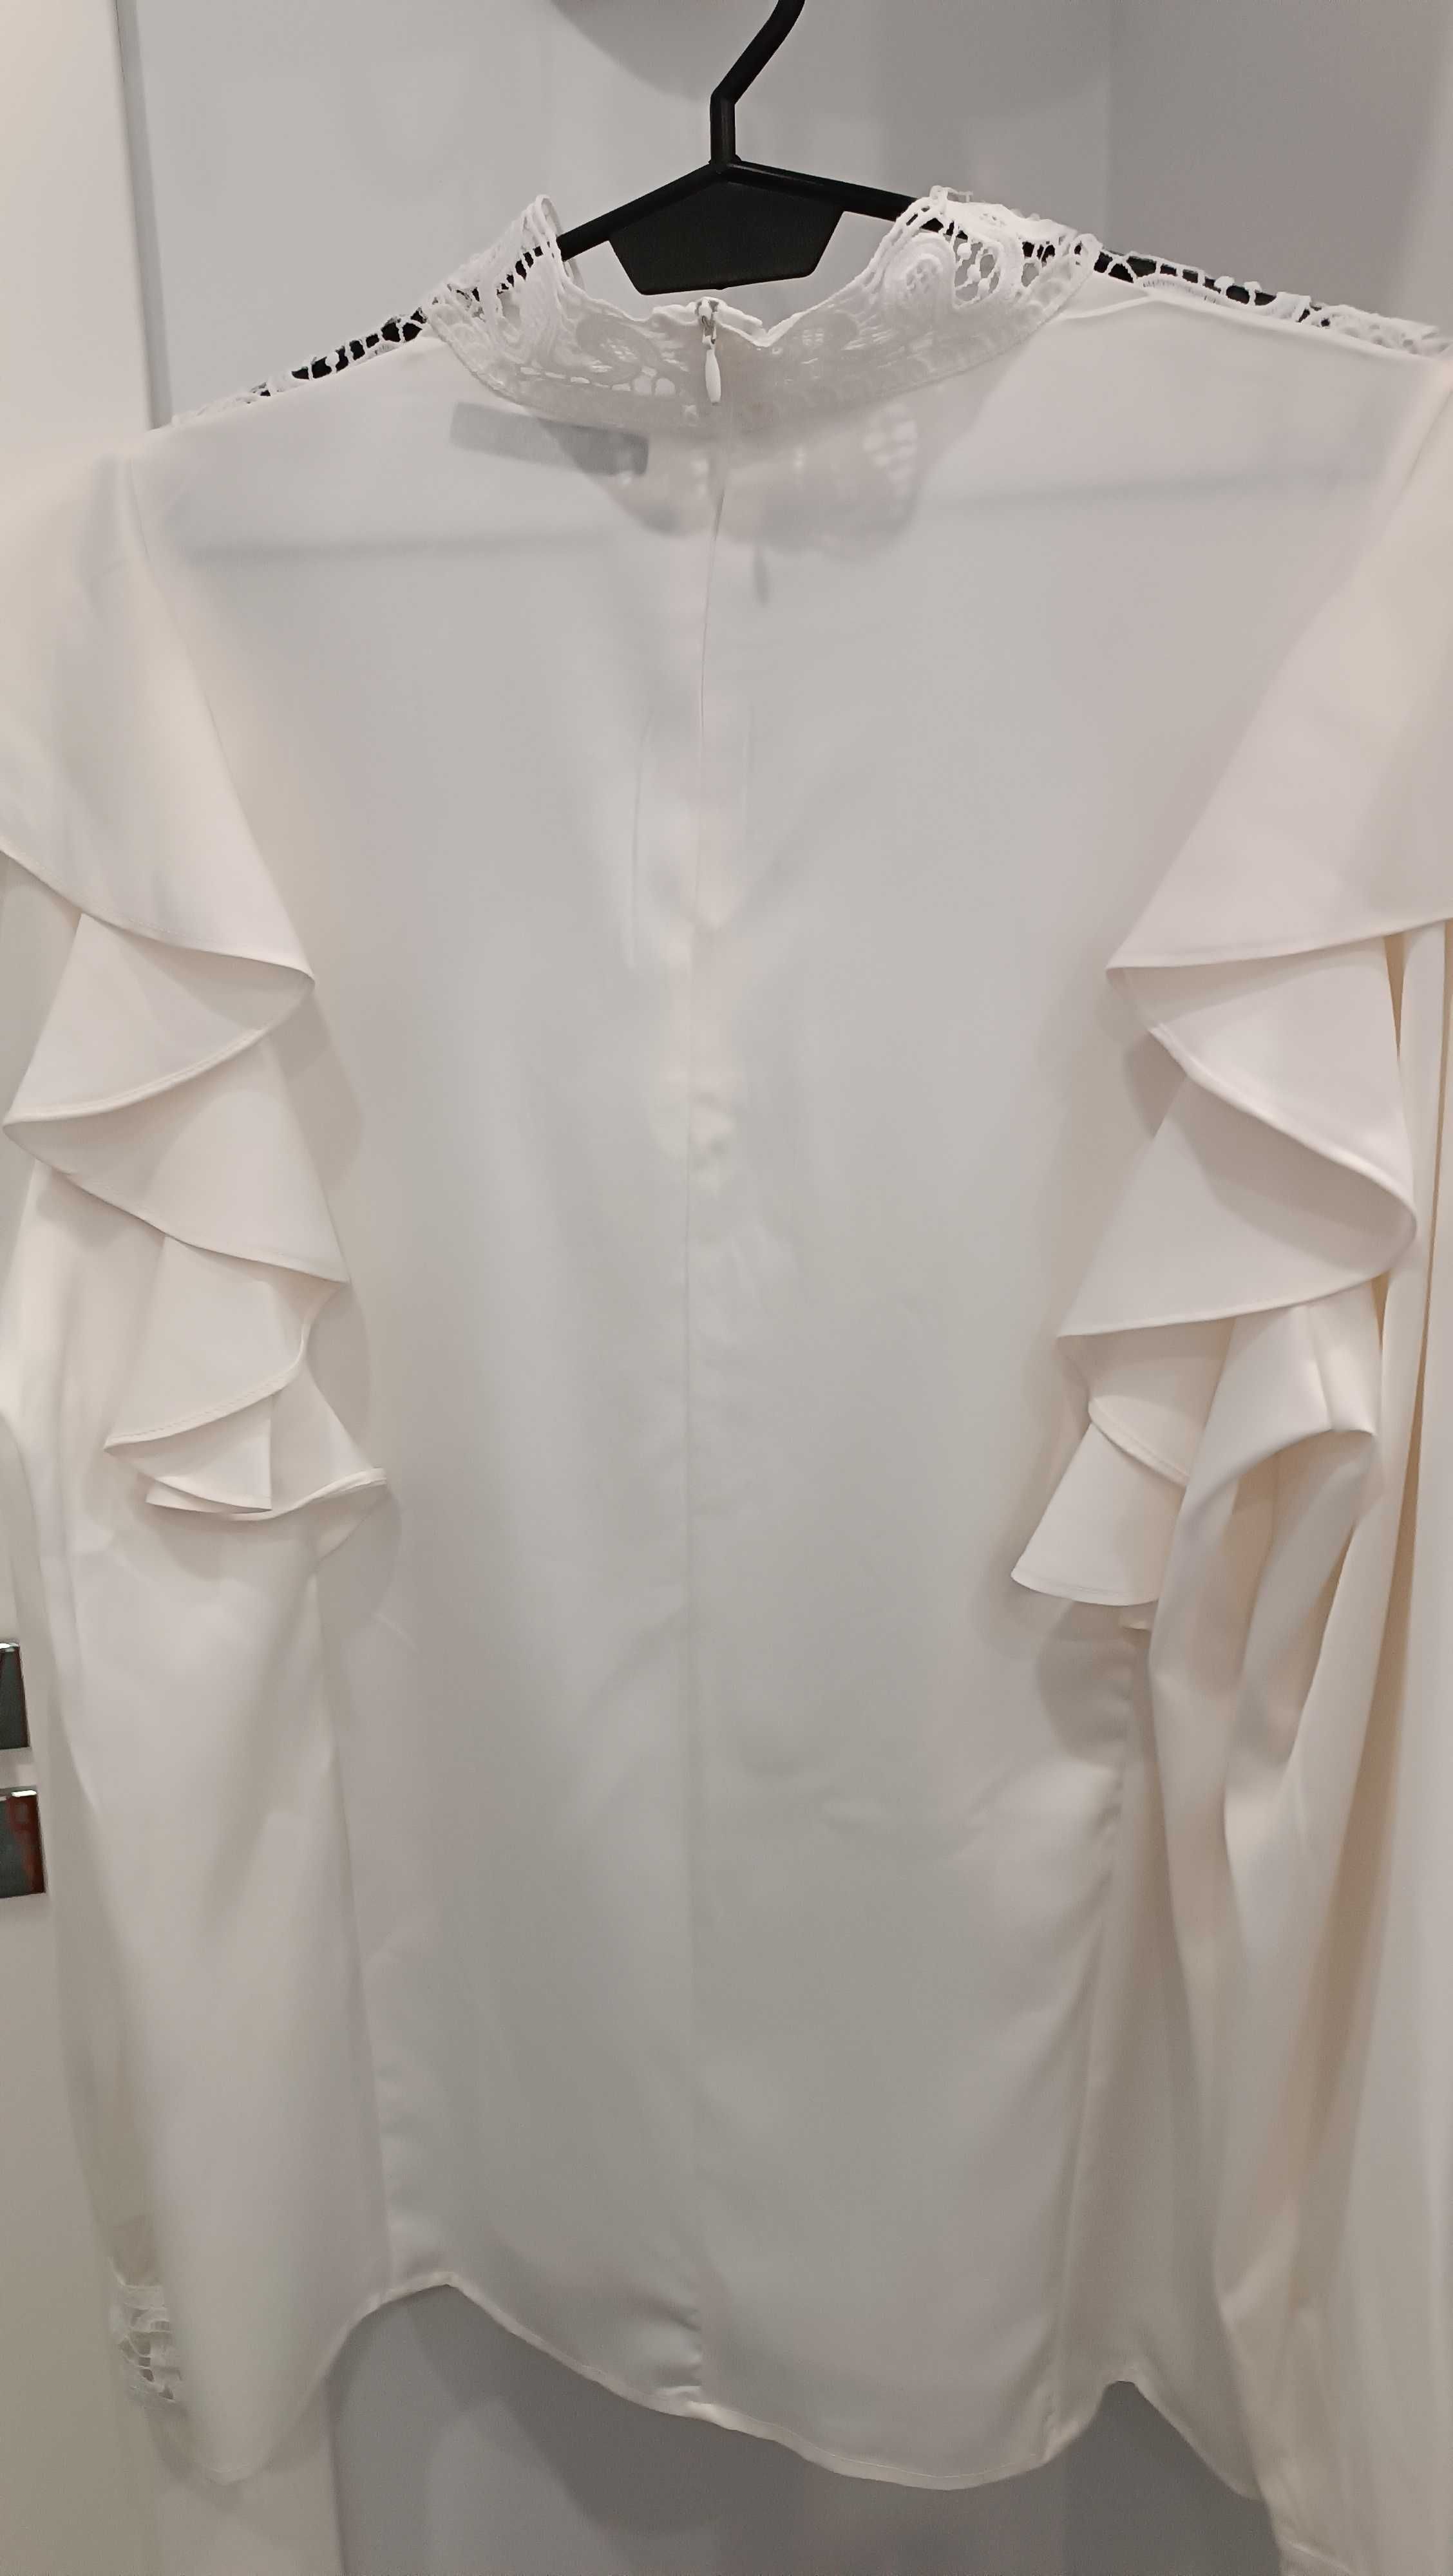 Damska elegancka bluzka z dekoracyjnymi wstawkami - M/L. Nowa z metką.